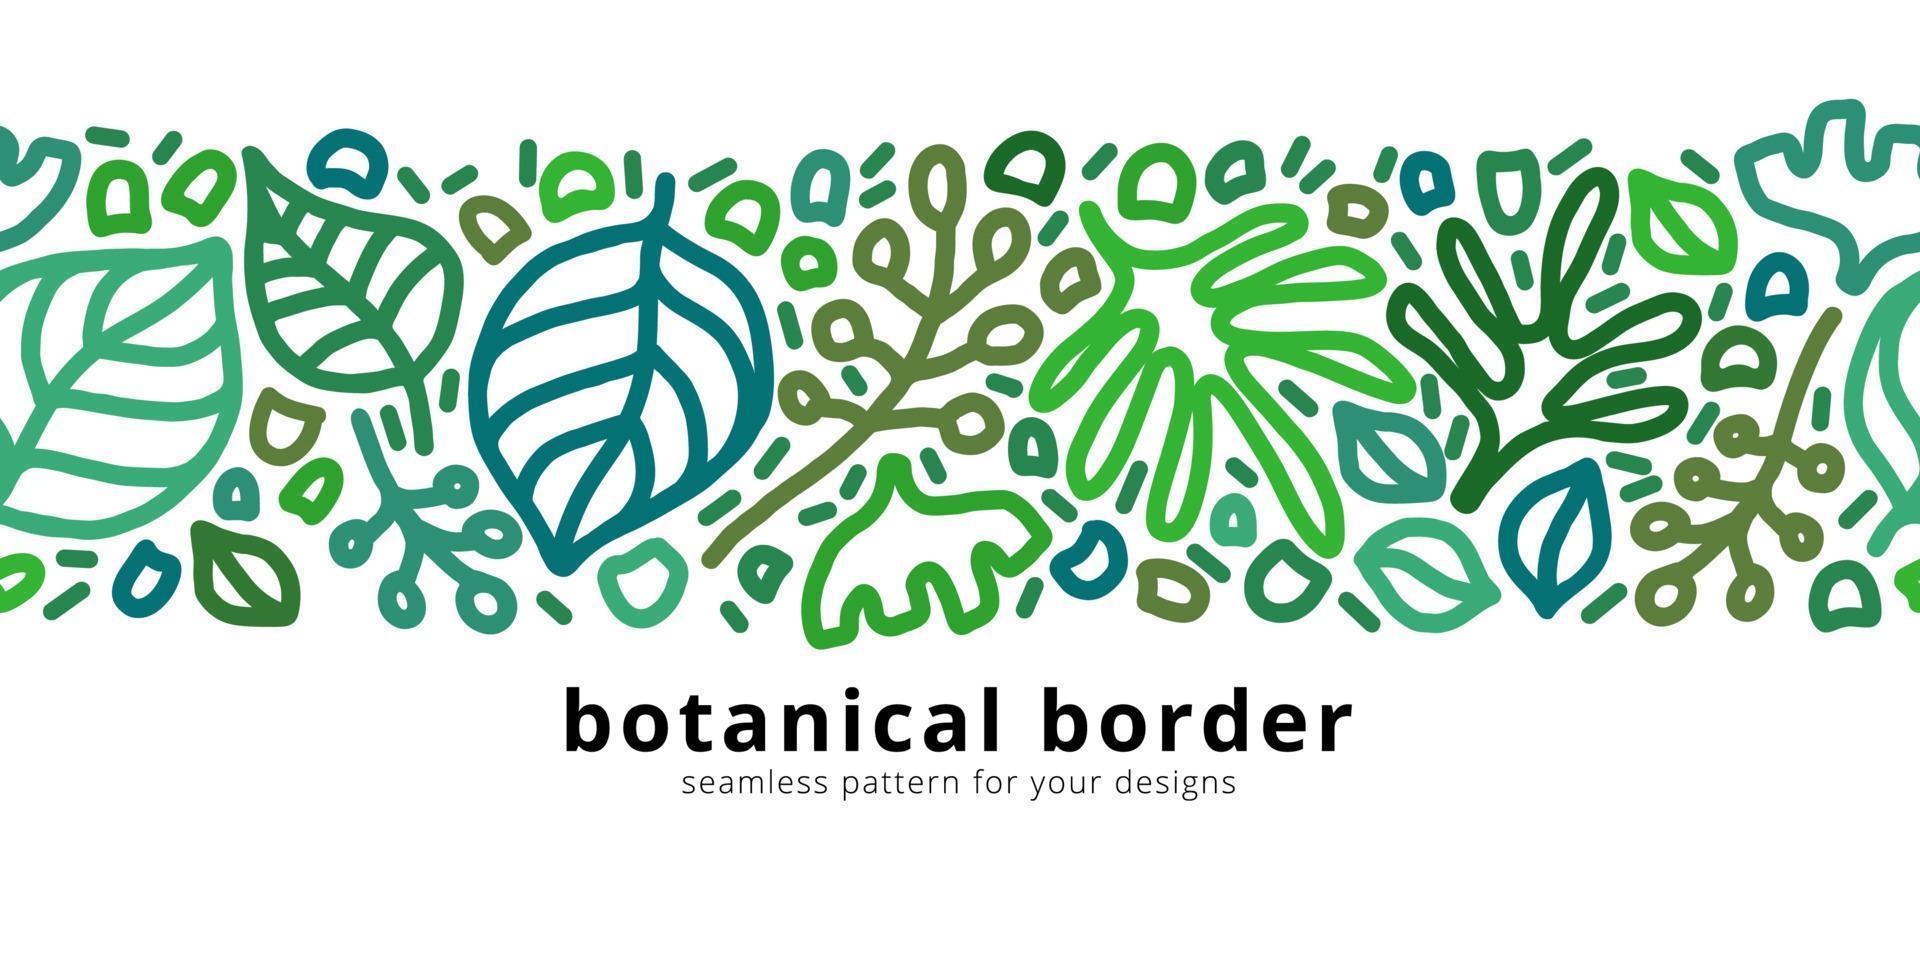 motif de bordure transparente de vecteur avec des éléments botaniques. fond moderne linéaire floral. modèle de carte horizontale avec espace de copie.